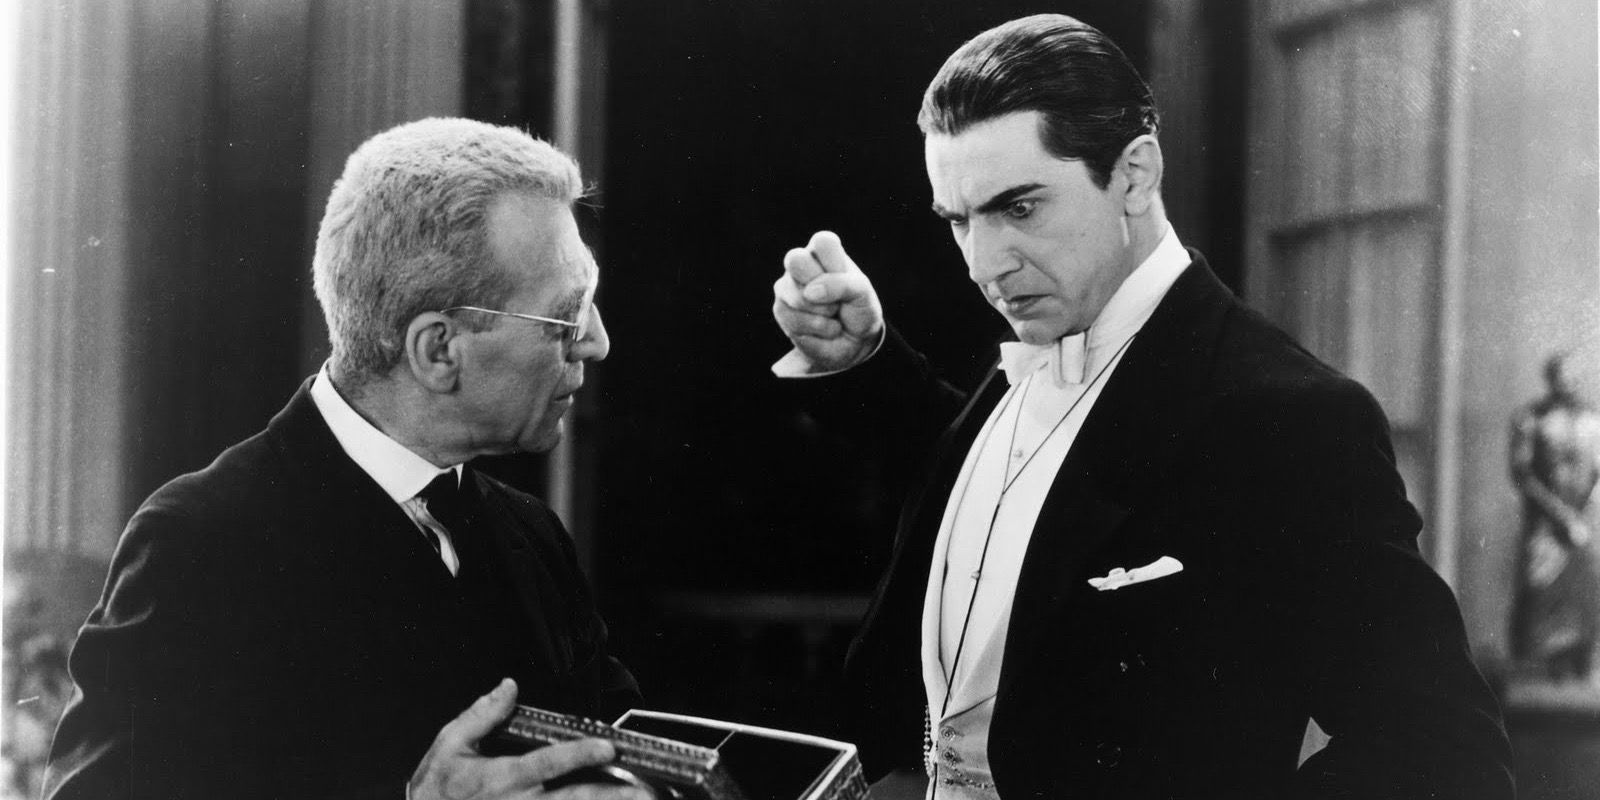 Edward Van Sloan as Van Helsing and Bela Lugosi as Dracula in Dracula 1931